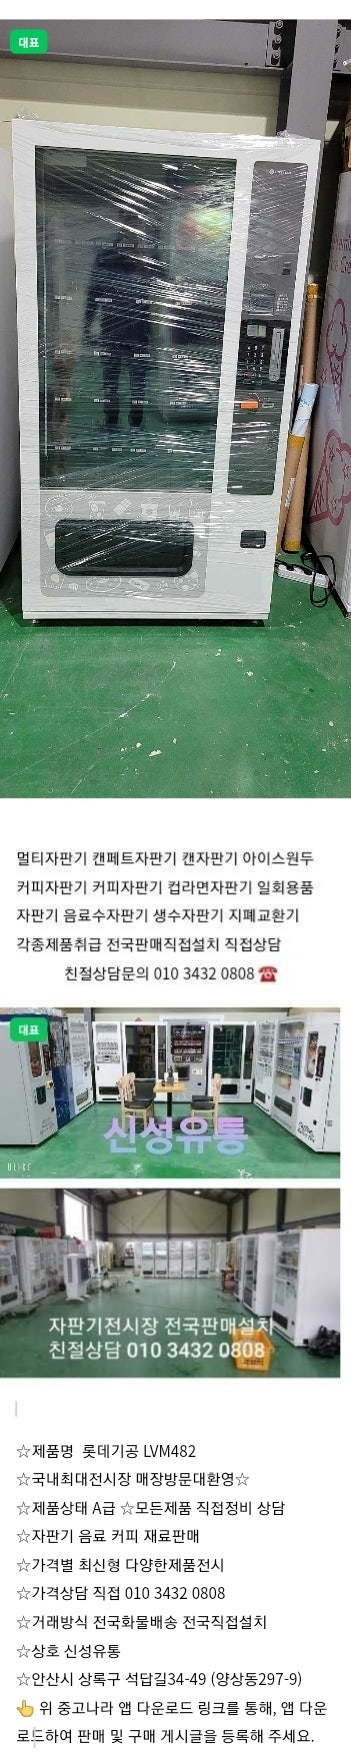 판매롯데최신형 멀티자판기 LVM482 전국판매설치 친절상담